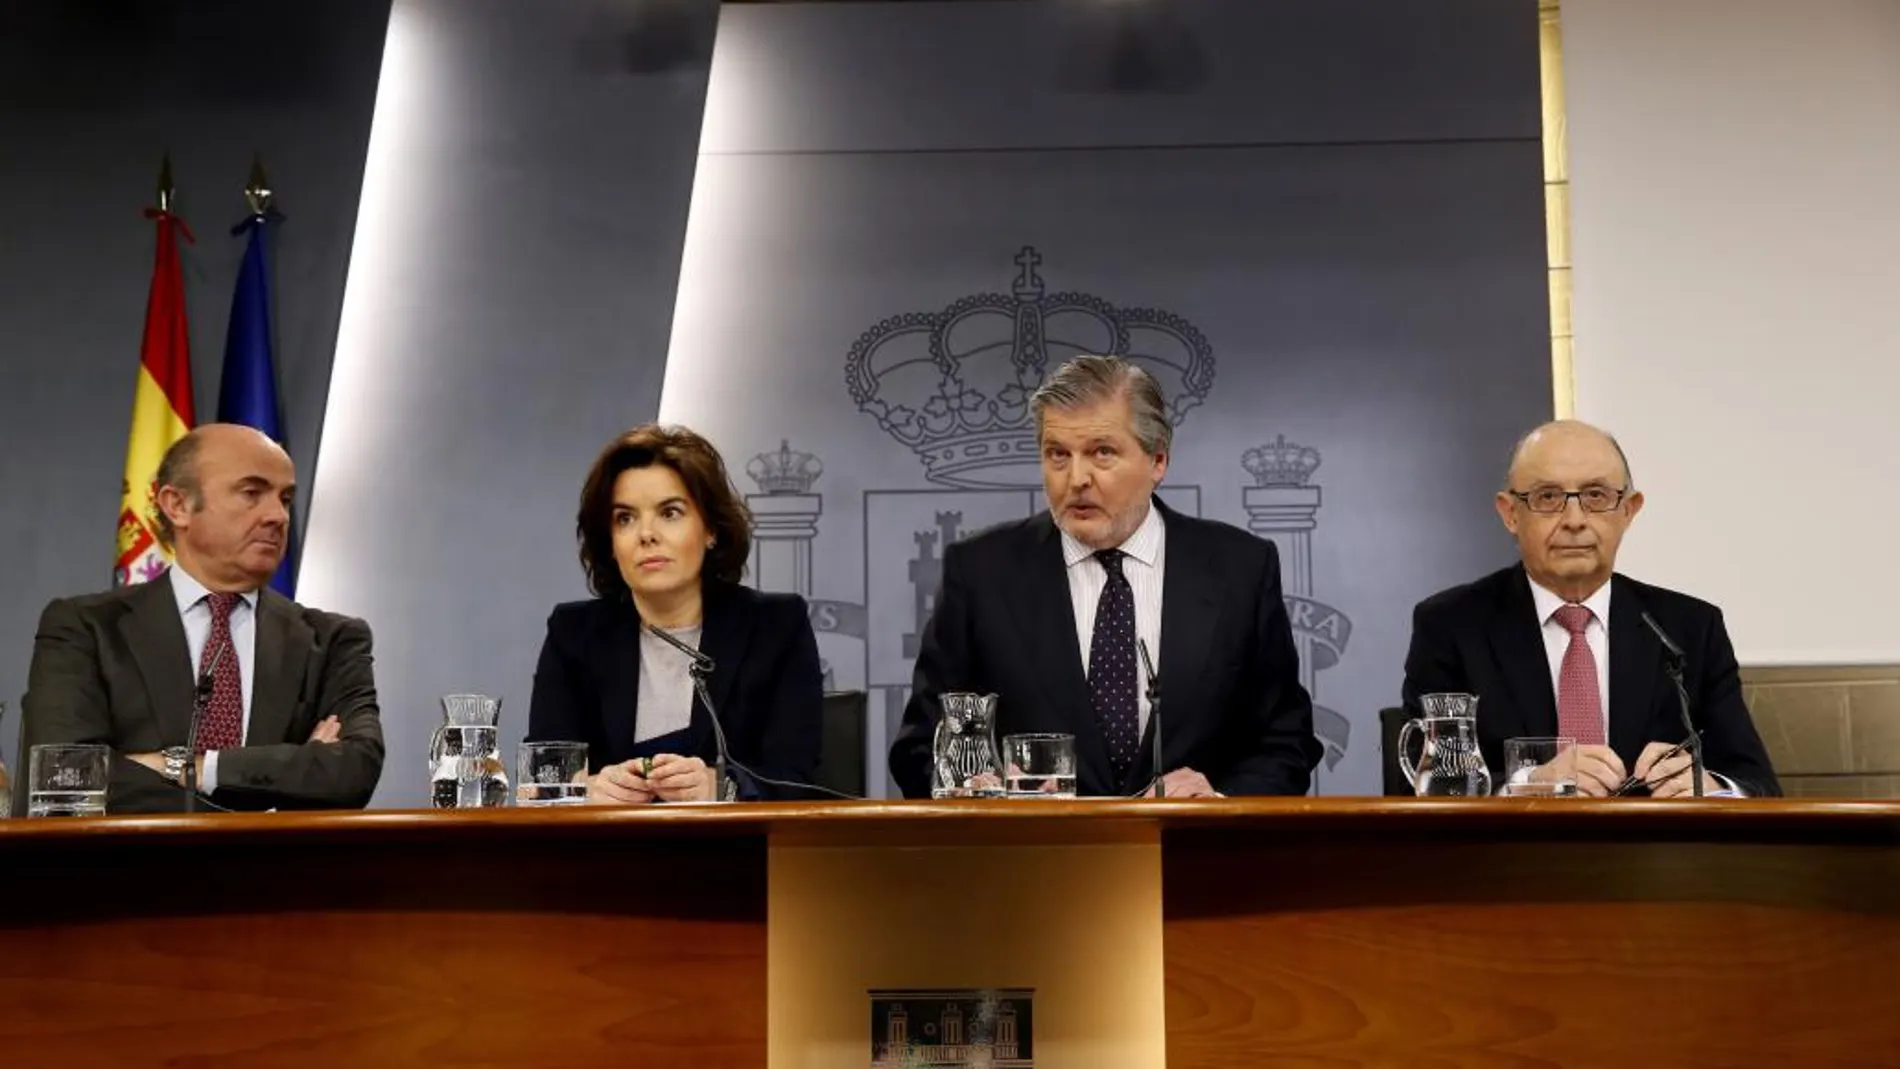 Luís de Guindos, Soraya Saénz de Santamaria, Íñigo Méndez de Vigo y Cristóbal Montoro, durante la rueda de prensa posterior al Consejo de Ministros, hoy en el Palacio de La Moncloa.